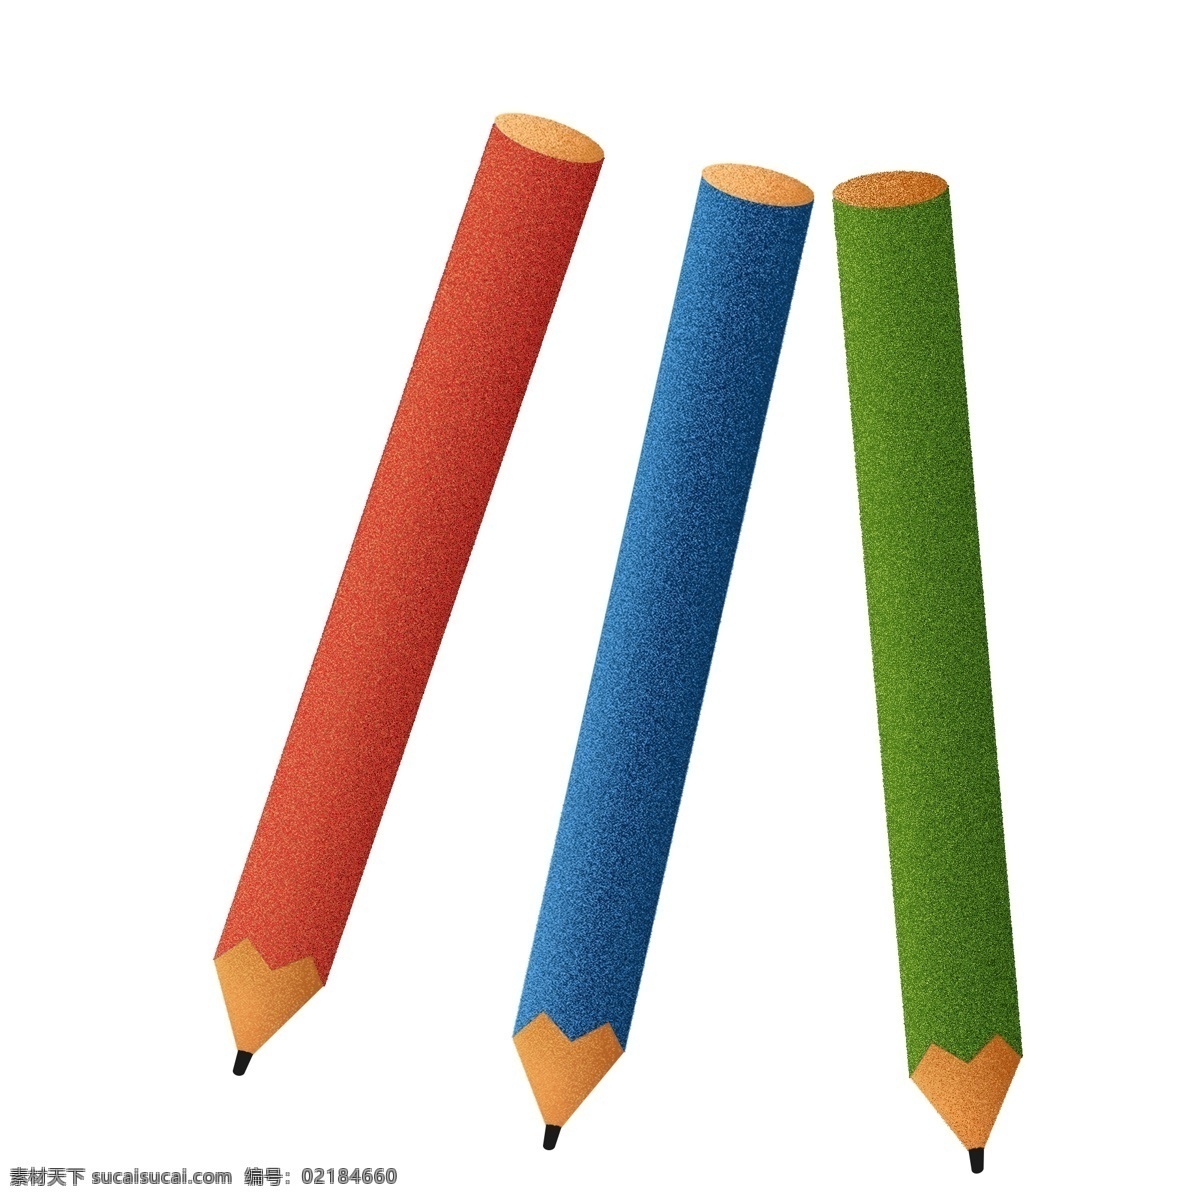 纯 原创 铅笔 儿童 文具 笔 彩色铅笔 儿童文具 学生文具 文具插画 幼儿园用具 学习工具